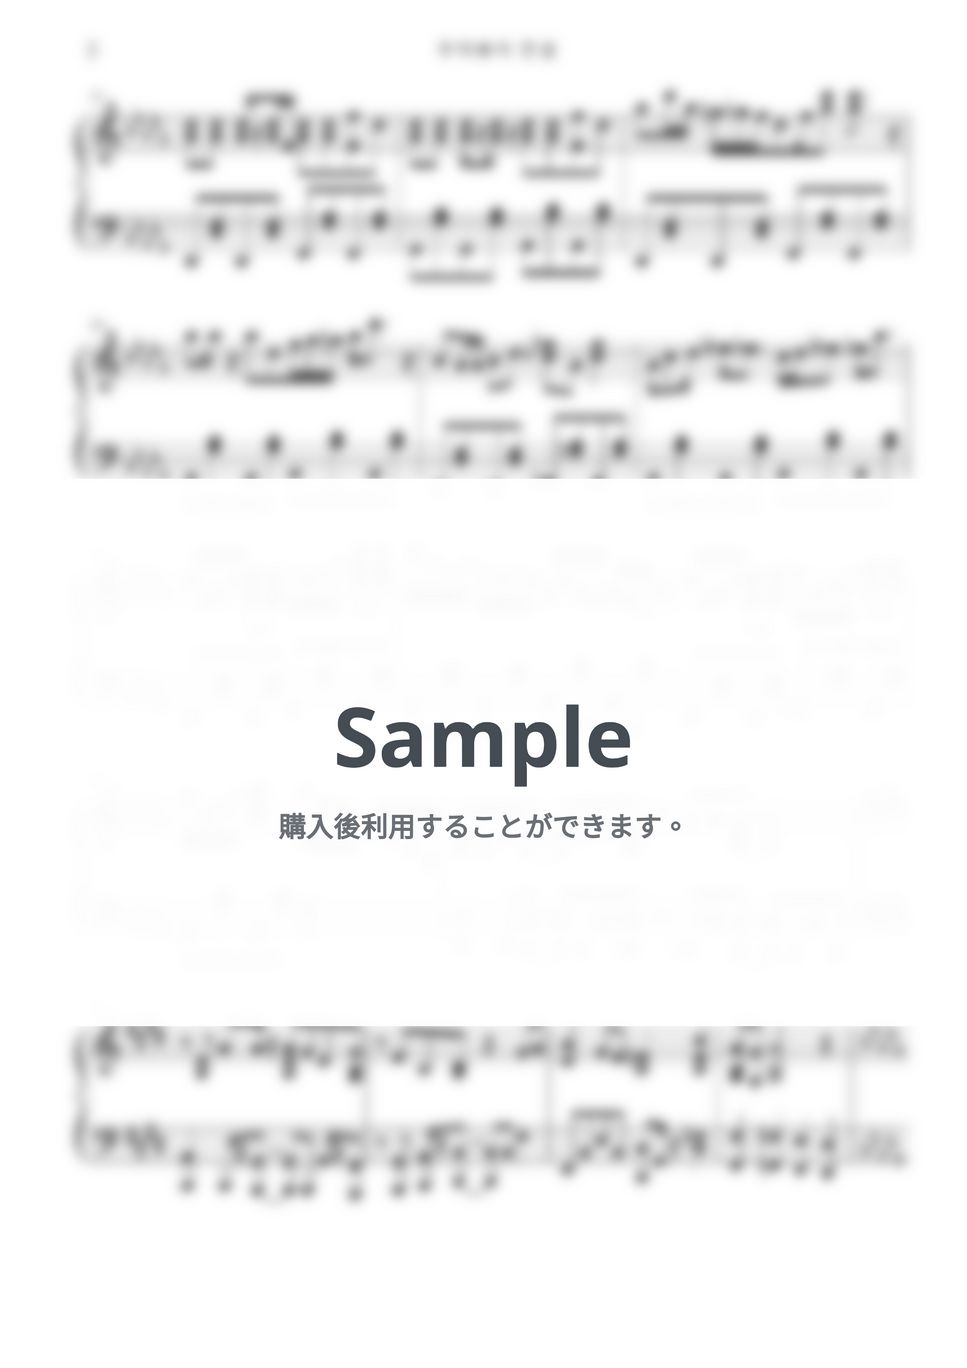 本田晃弘 - うまぴょい伝説 (ウマ娘 プリティーダービー OST) by Free Space / Anime Piano Covers